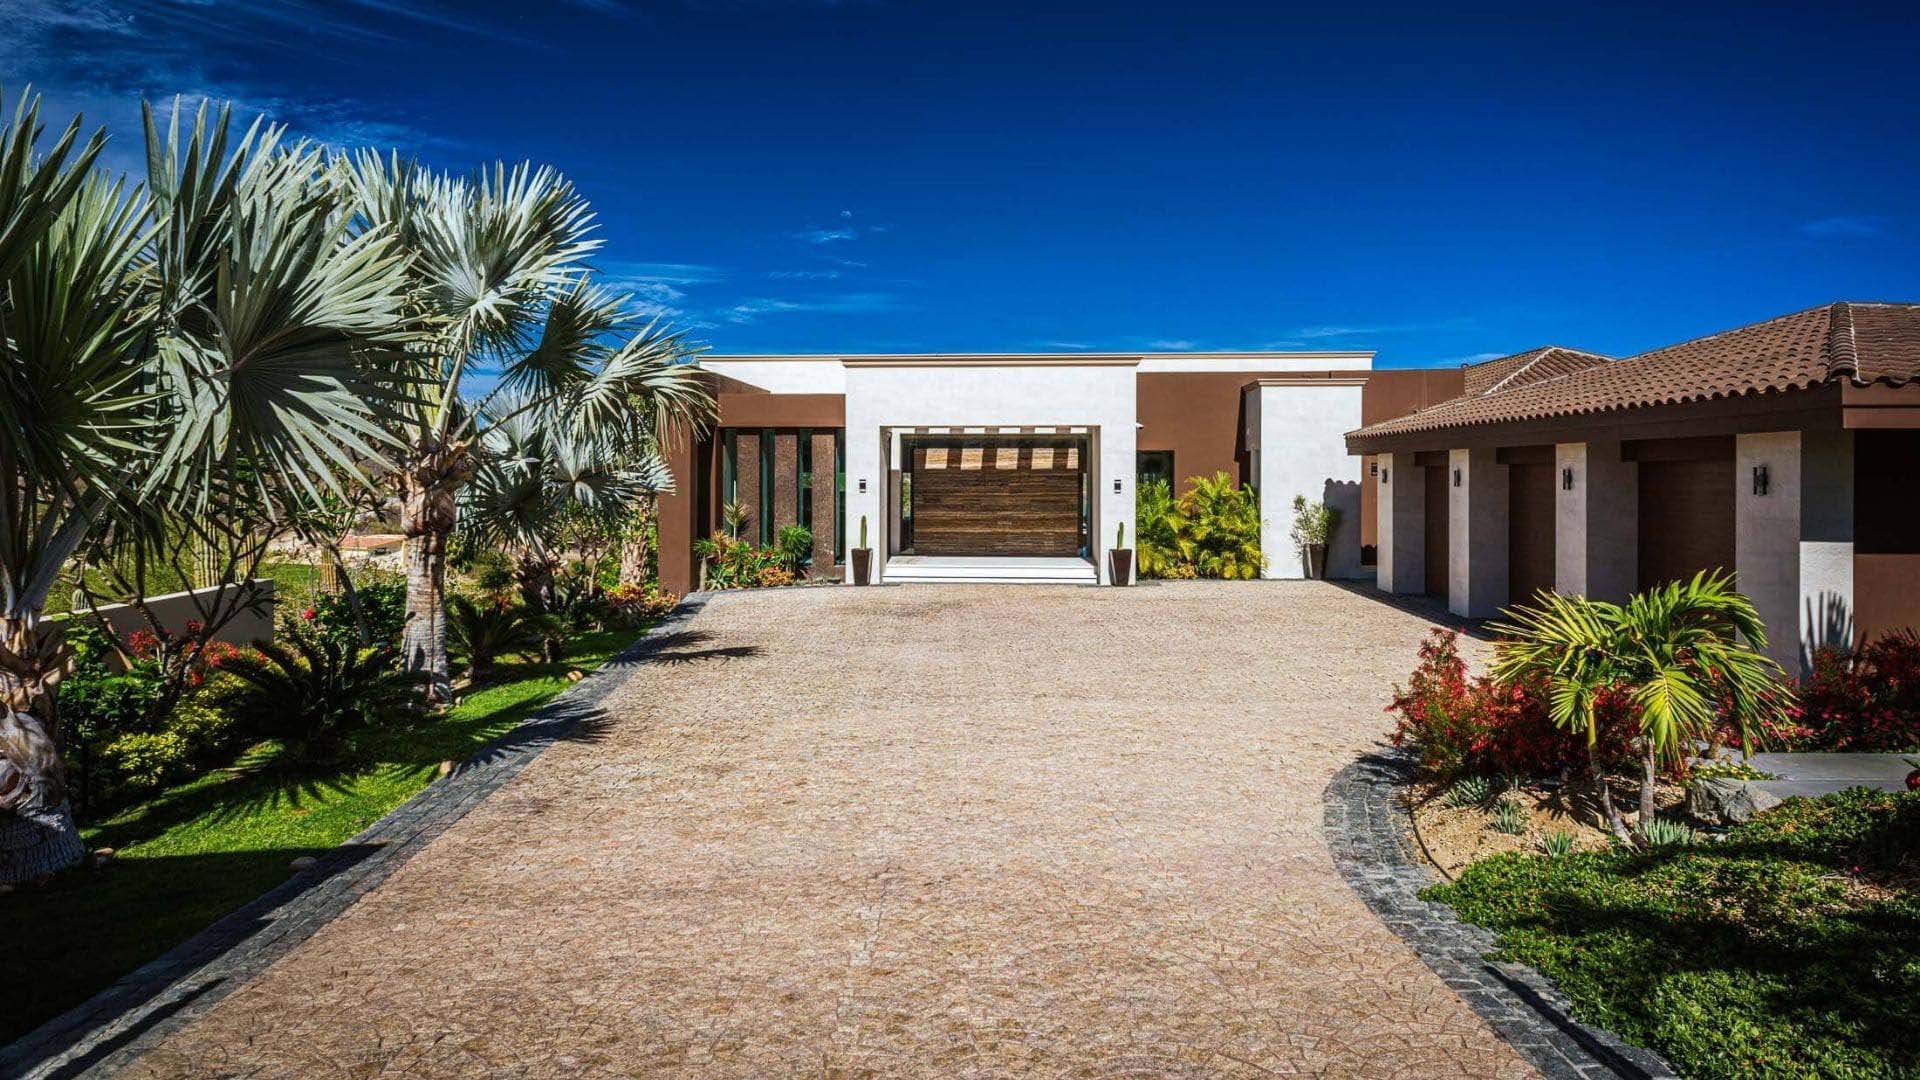 La Casa de Villa - San Jose del Cabo